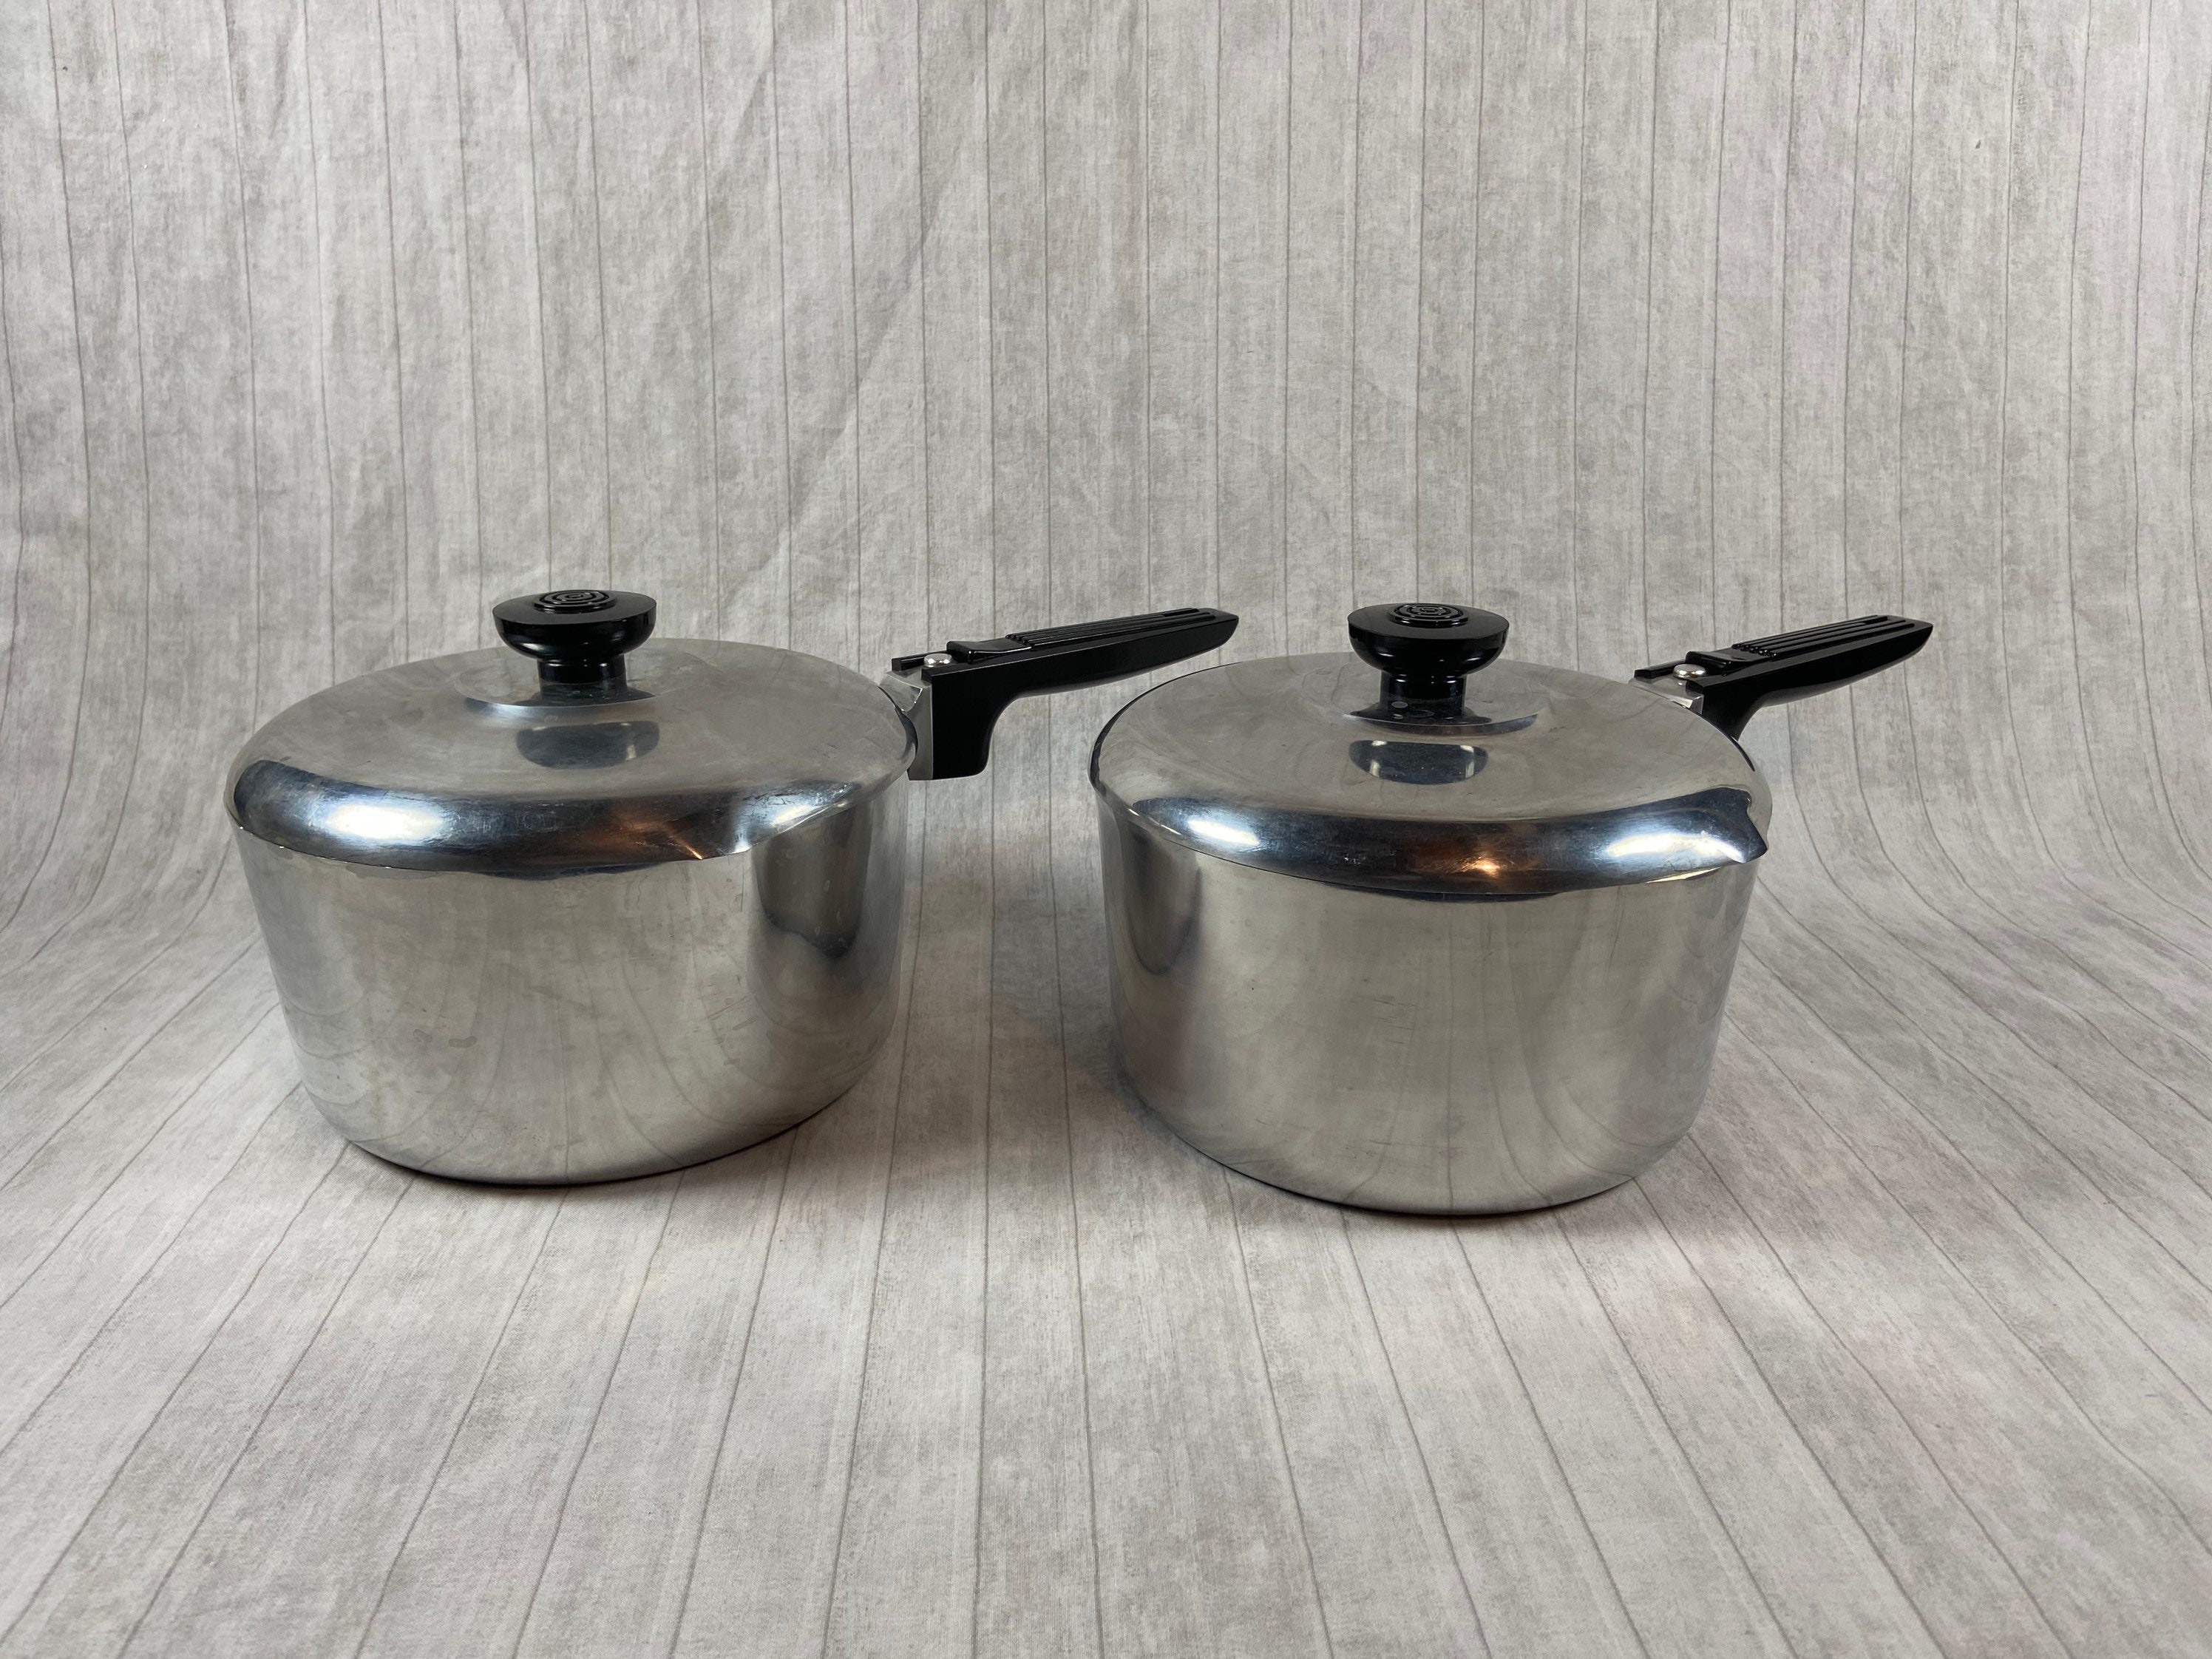 Magnalite Aluminum Cookware Vintage 3 Quarts Pots Pans Handled 